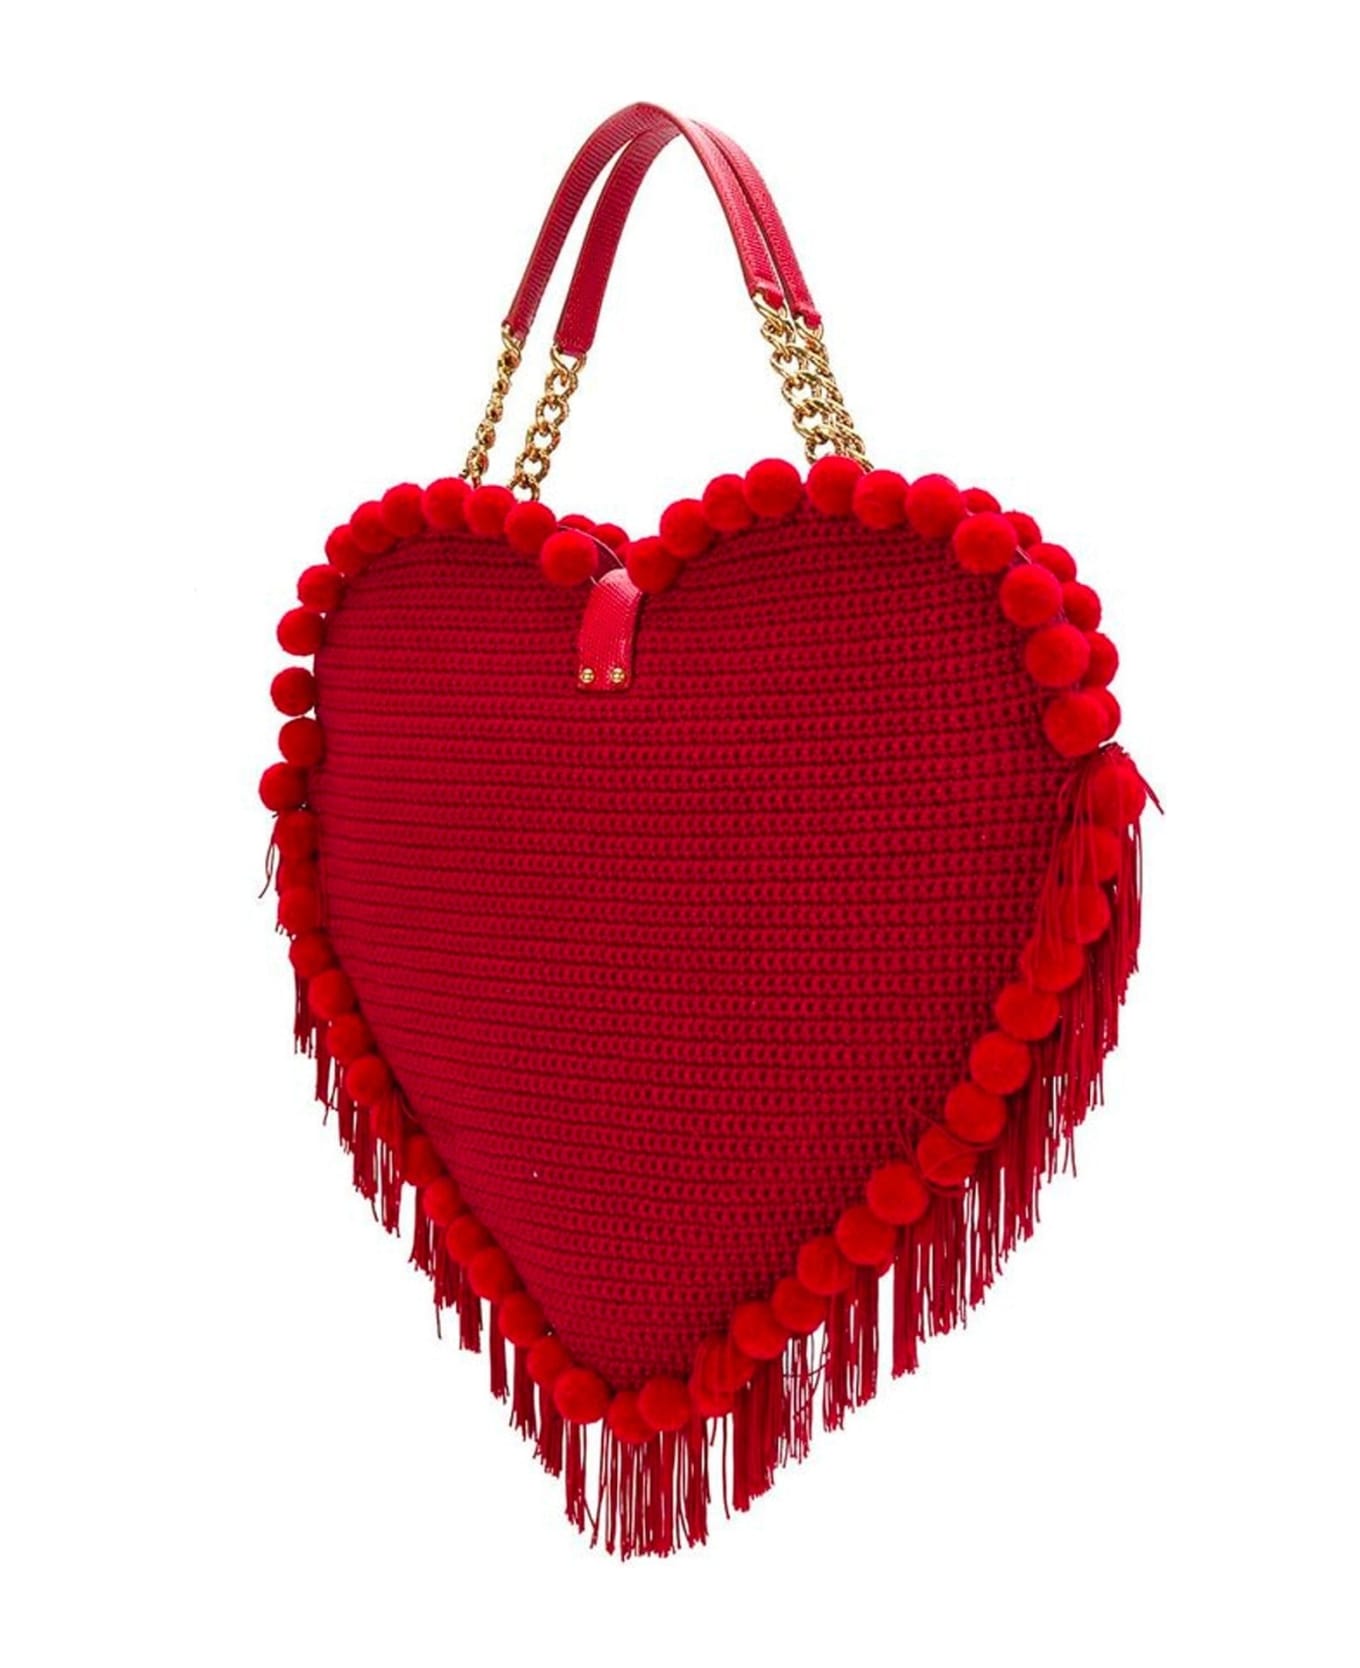 Dolce & Gabbana My Heart Bag - Red